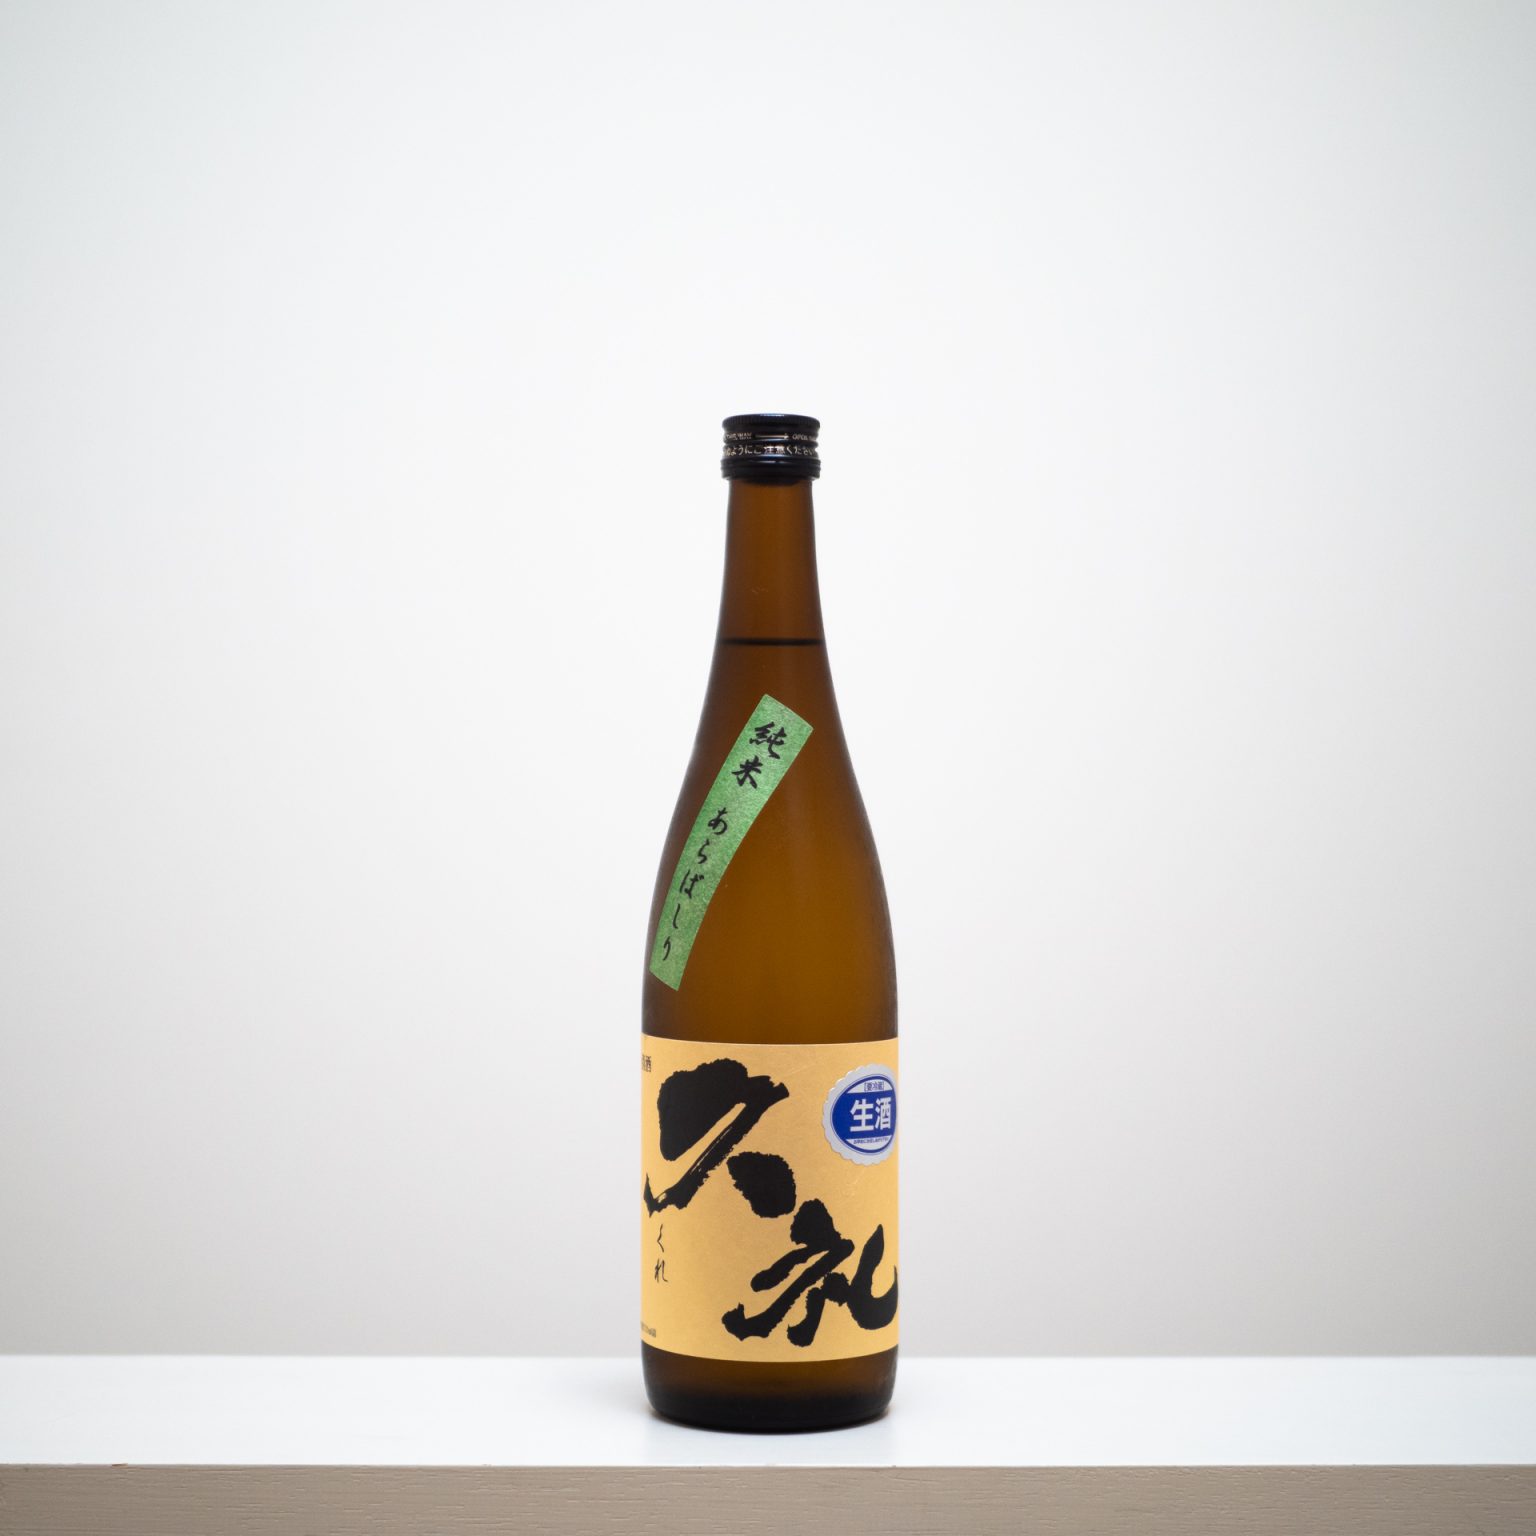 高知県にある最古の酒蔵「西岡酒造店」の米のふくよかな旨みと、あらばしり特有のフレッシュさも感じられる純米酒。